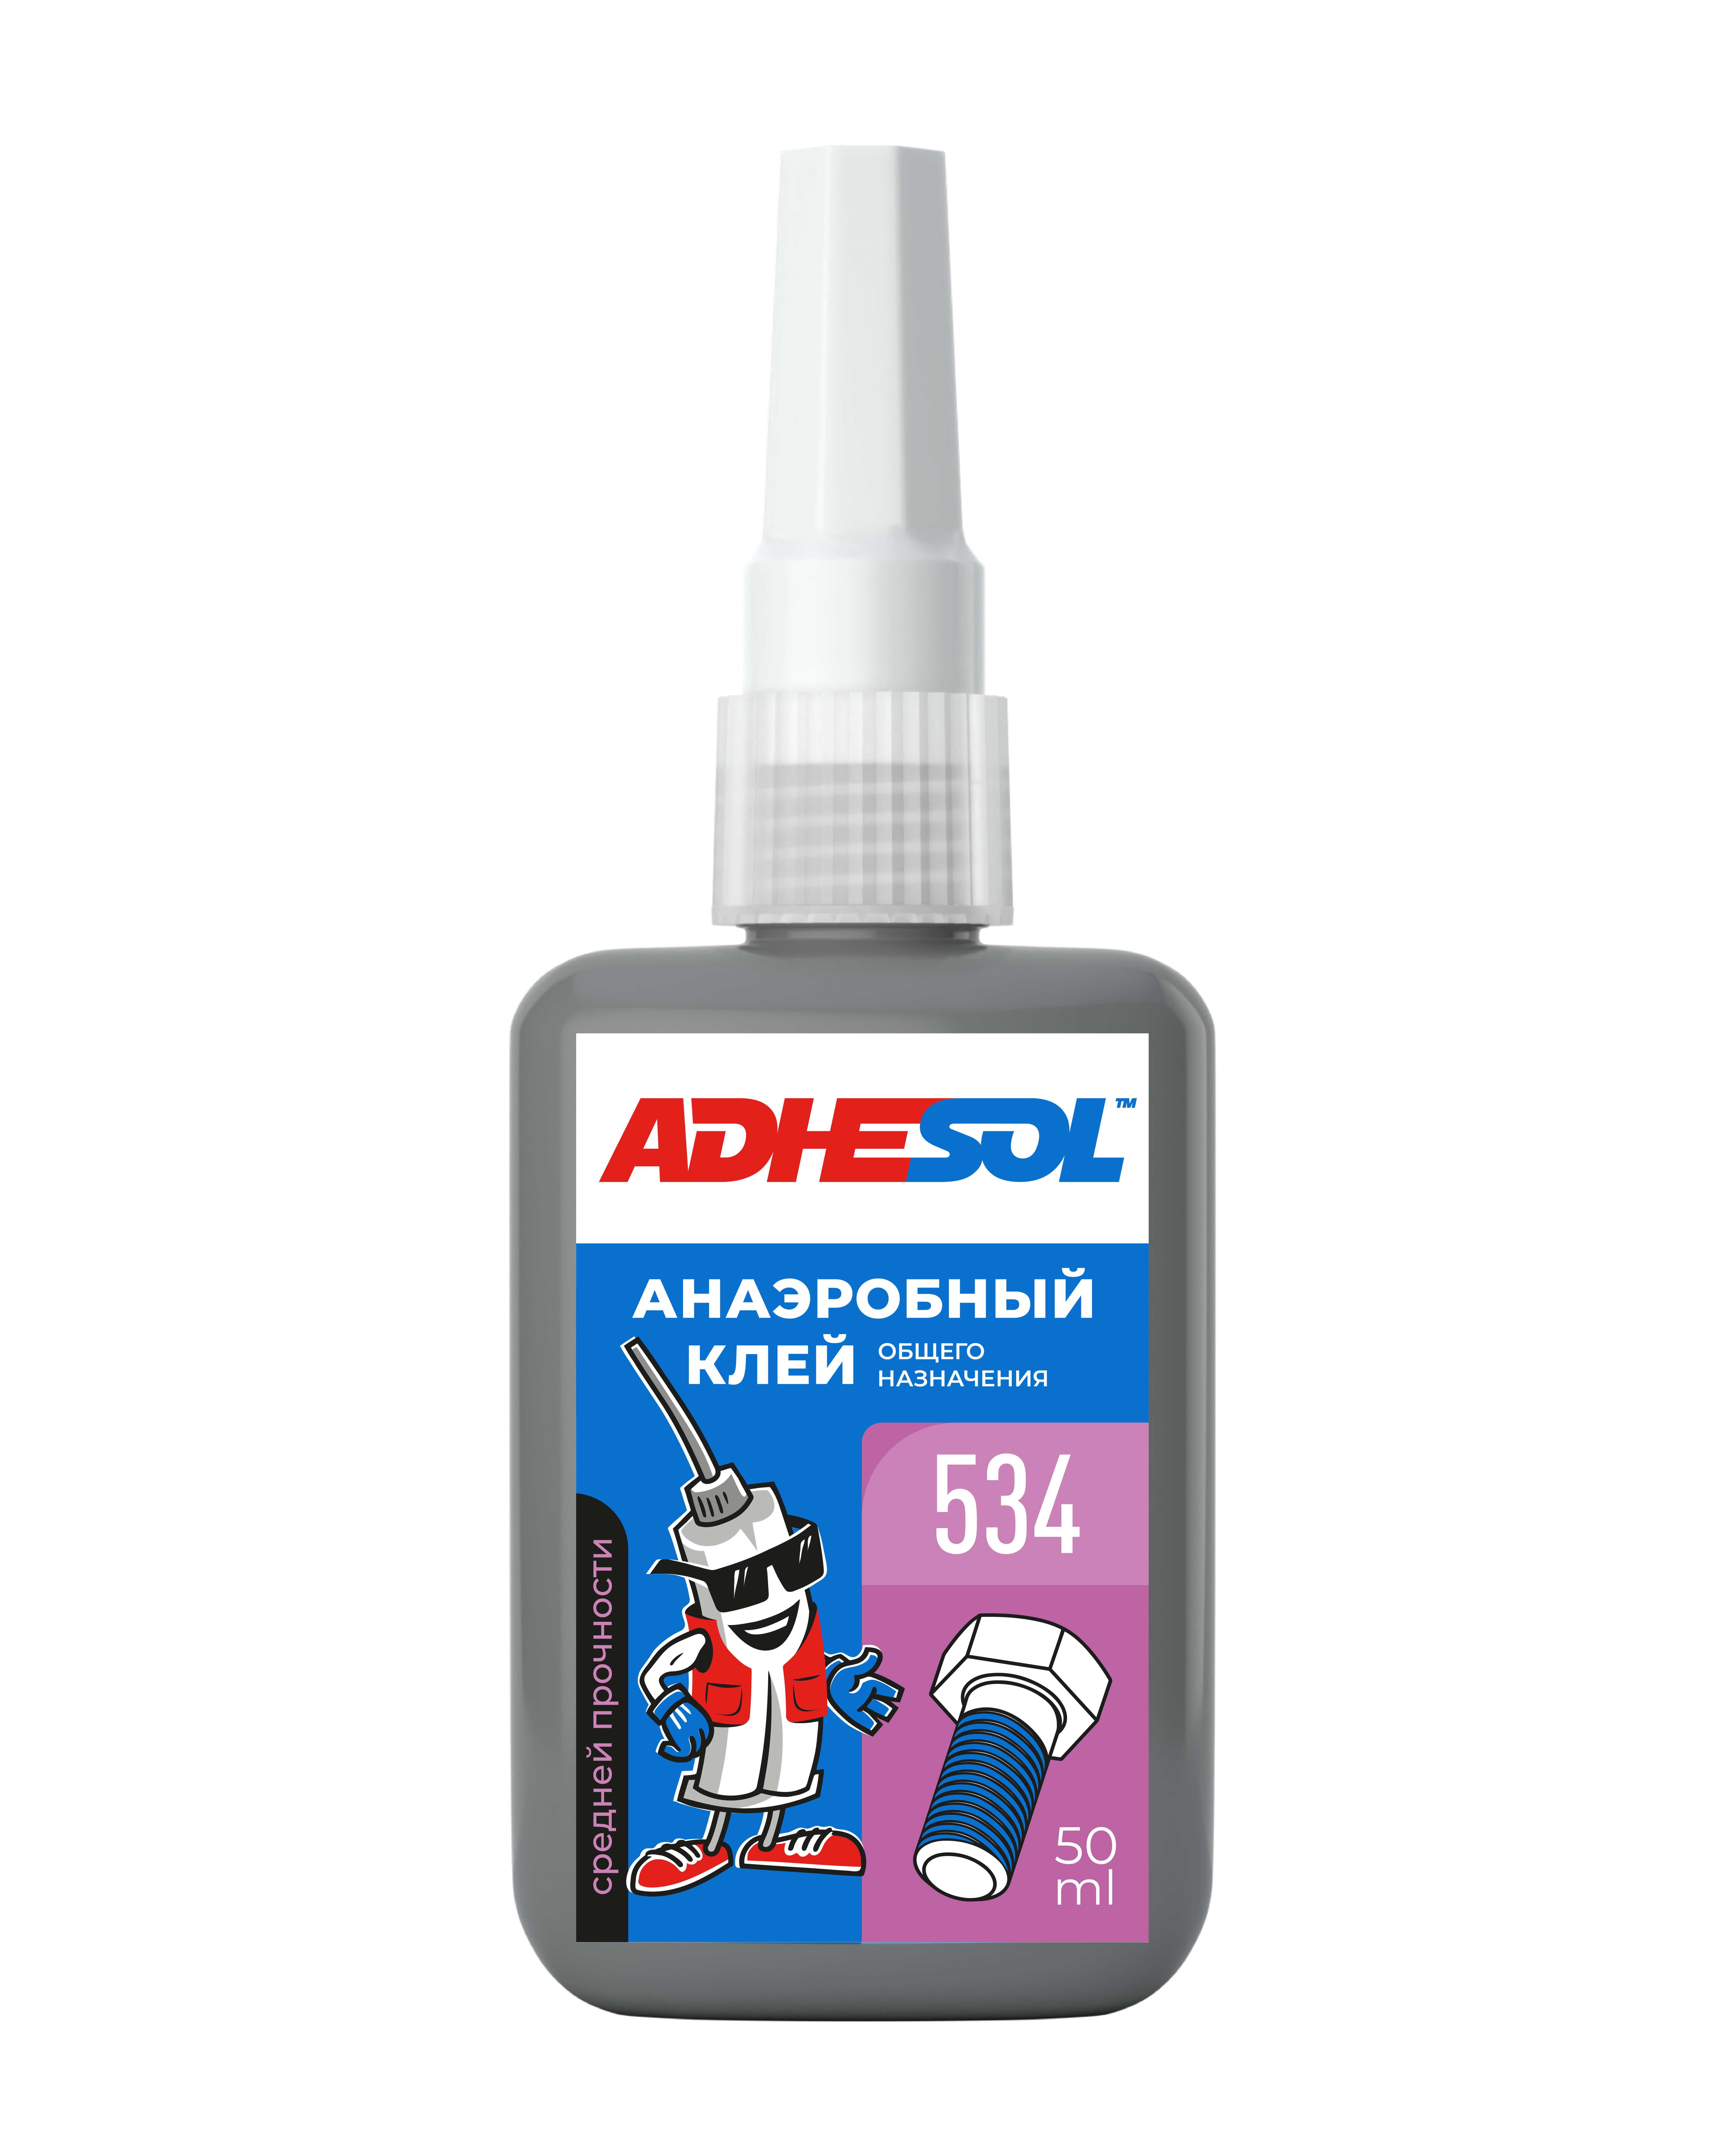 Анаэробный клей средней  прочности для резьбовых соединений ADHESOL 534 50мл